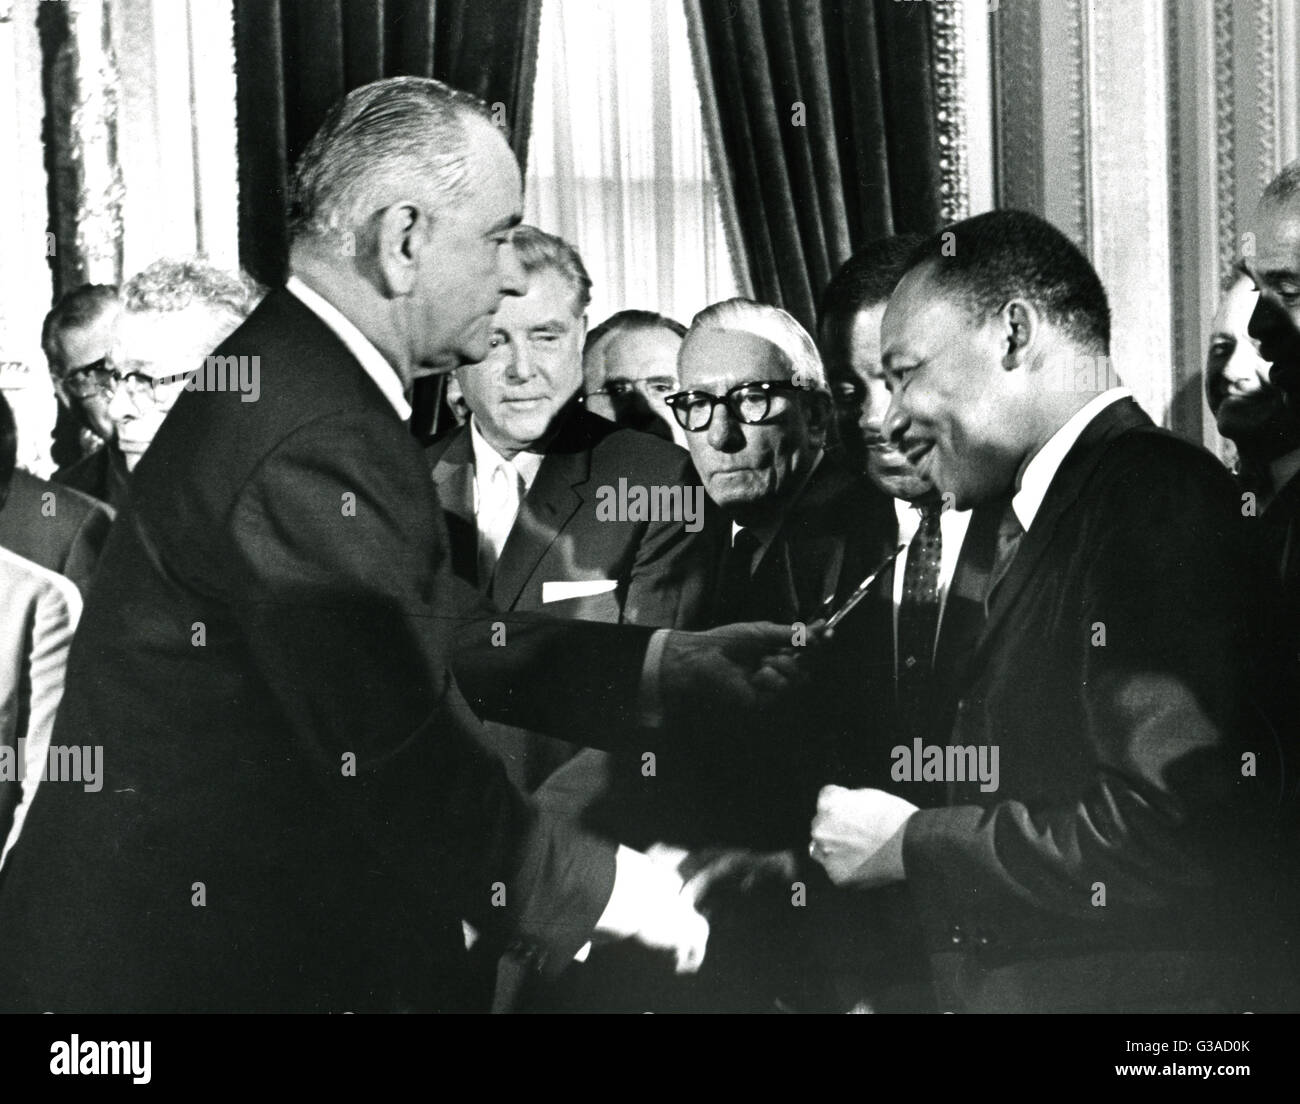 El presidente Lyndon B. Johnson manos una pluma de recuerdos al reverendo Martin Luther King, Jr. después de firmar el proyecto de ley de los derechos de votación. El evento tuvo lugar en el Capitolio. Foto de stock